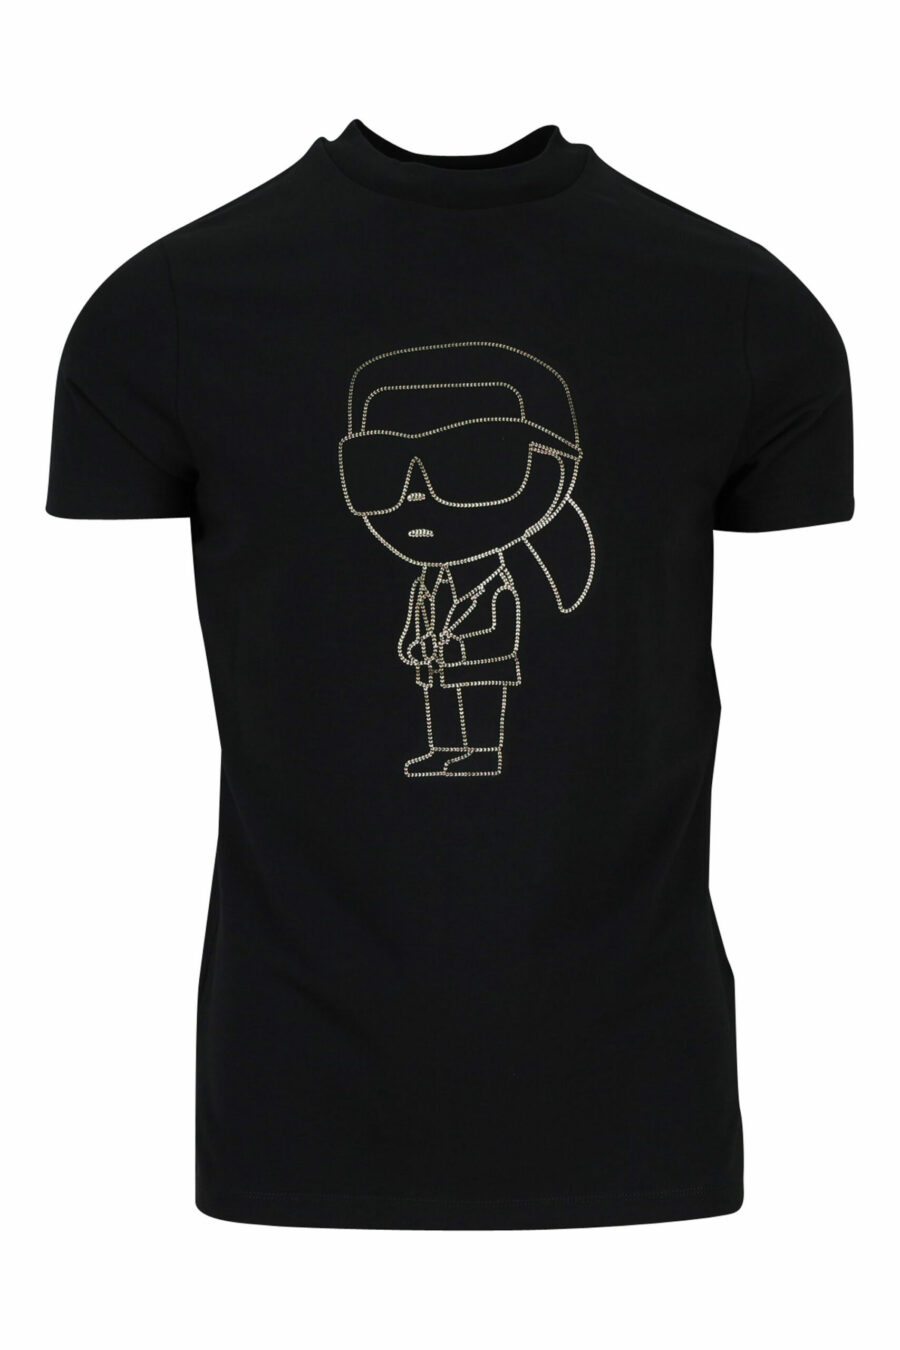 T-shirt preta com maxilogo "karl" dourado - 4062226681872 scaled